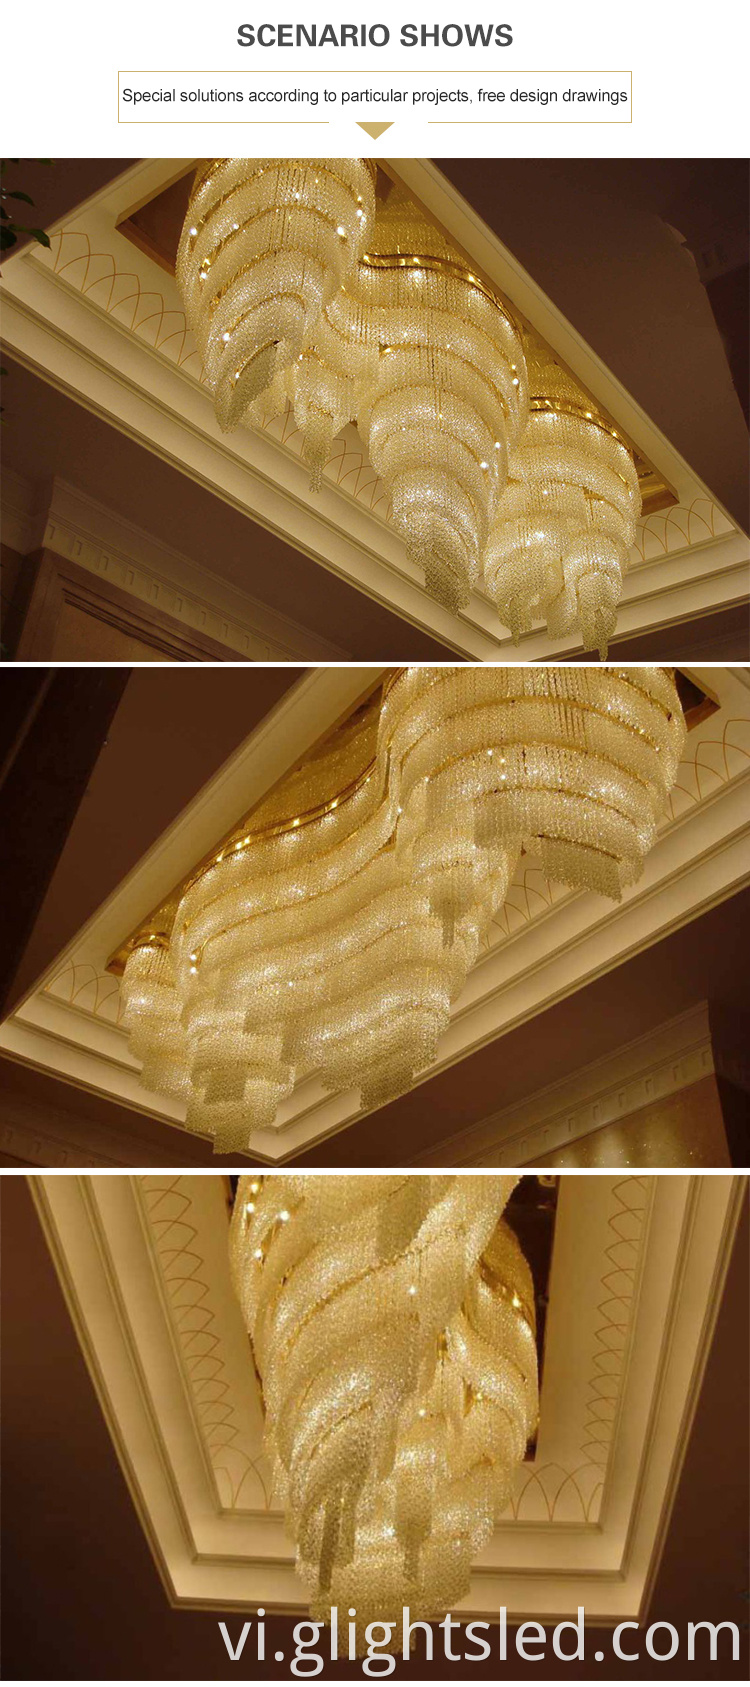 Thiết kế mới sản phẩm mới sảnh khách sạn hiện đại trang trí sang trọng đèn chùm dài